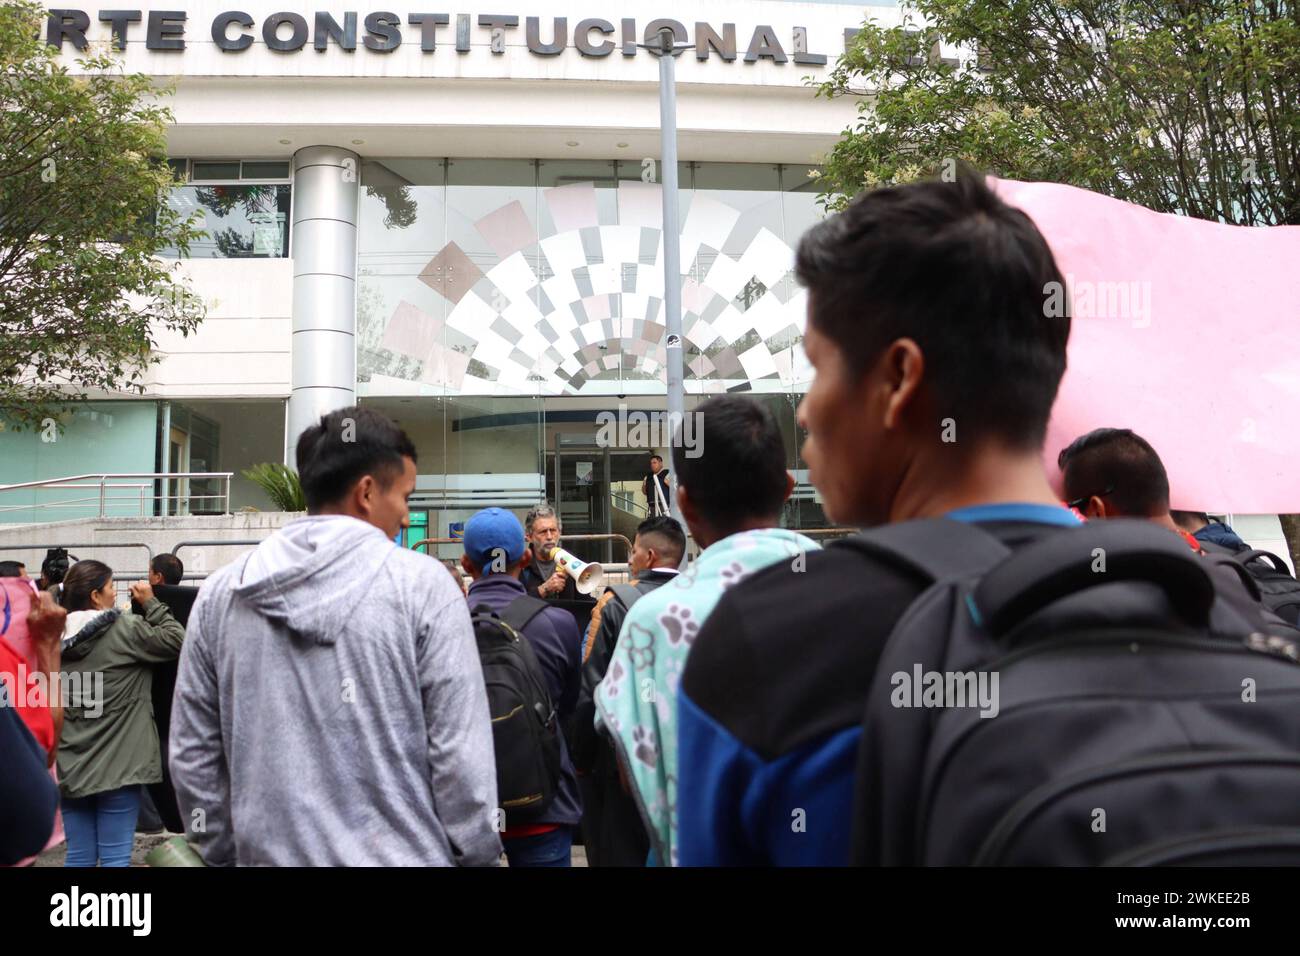 COMUNEROS-KICHWAS-CORTE-CONSTITUCIINAL Quito, martes 20 de febrero del 2024 Comuneros y comuneras Kichwas de la Amazonia, acudieron a un planton en la Corte Constitucional, para solicitar se de respuesta al caso del derrame de 15800 de hidrocarburos derramados el 7 de abril del 2020, que afectan a sus comunidades. Fotos:Rolando Enriquez/API Quito Pichincha Ecuador EVN-COMUNEROS-KICHWAS-CORTE-CONSTITUCIINAL-16951c71c99c3361e47961829441dbec *** KICHWAS COMMUNALS IN THE CONSTITUTIONAL COURT Quito, Tuesday, February 20, 2024 Kichwa community members of the Amazon, went to a sit-in at the Constitut Stock Photo